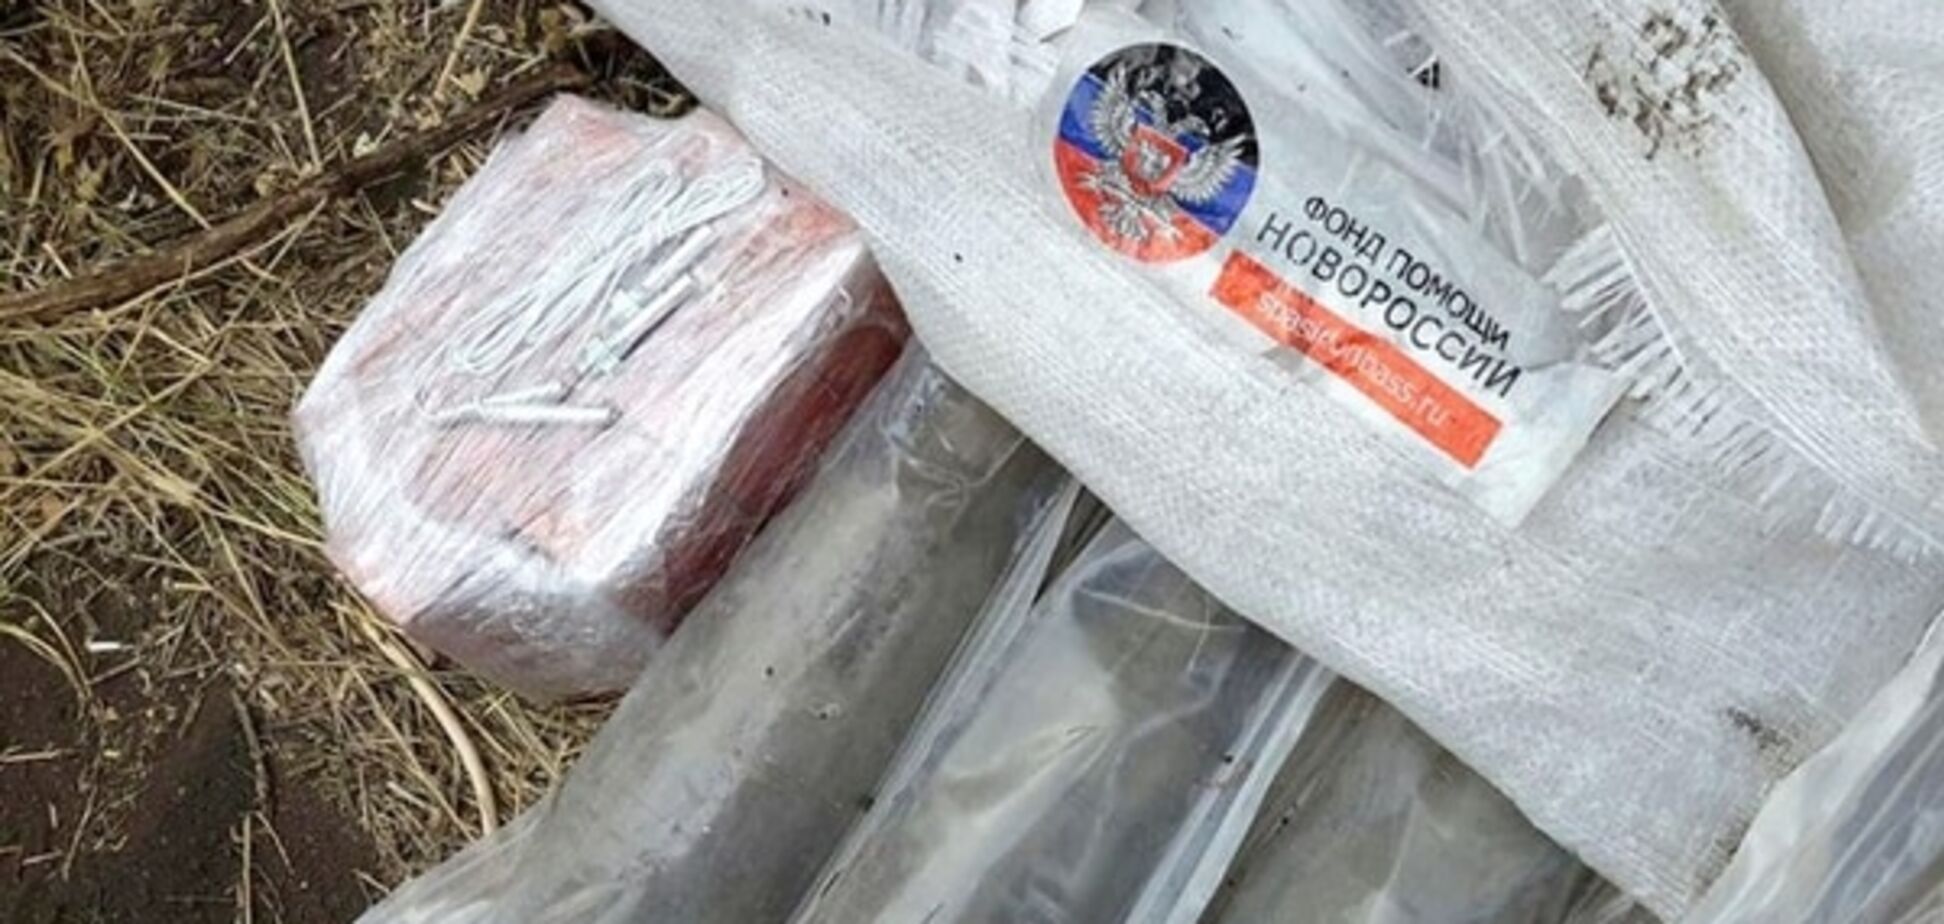 Під Маріуполем знайшли вибухівку в мішках з-під російської 'гуманітарки': фотофакт